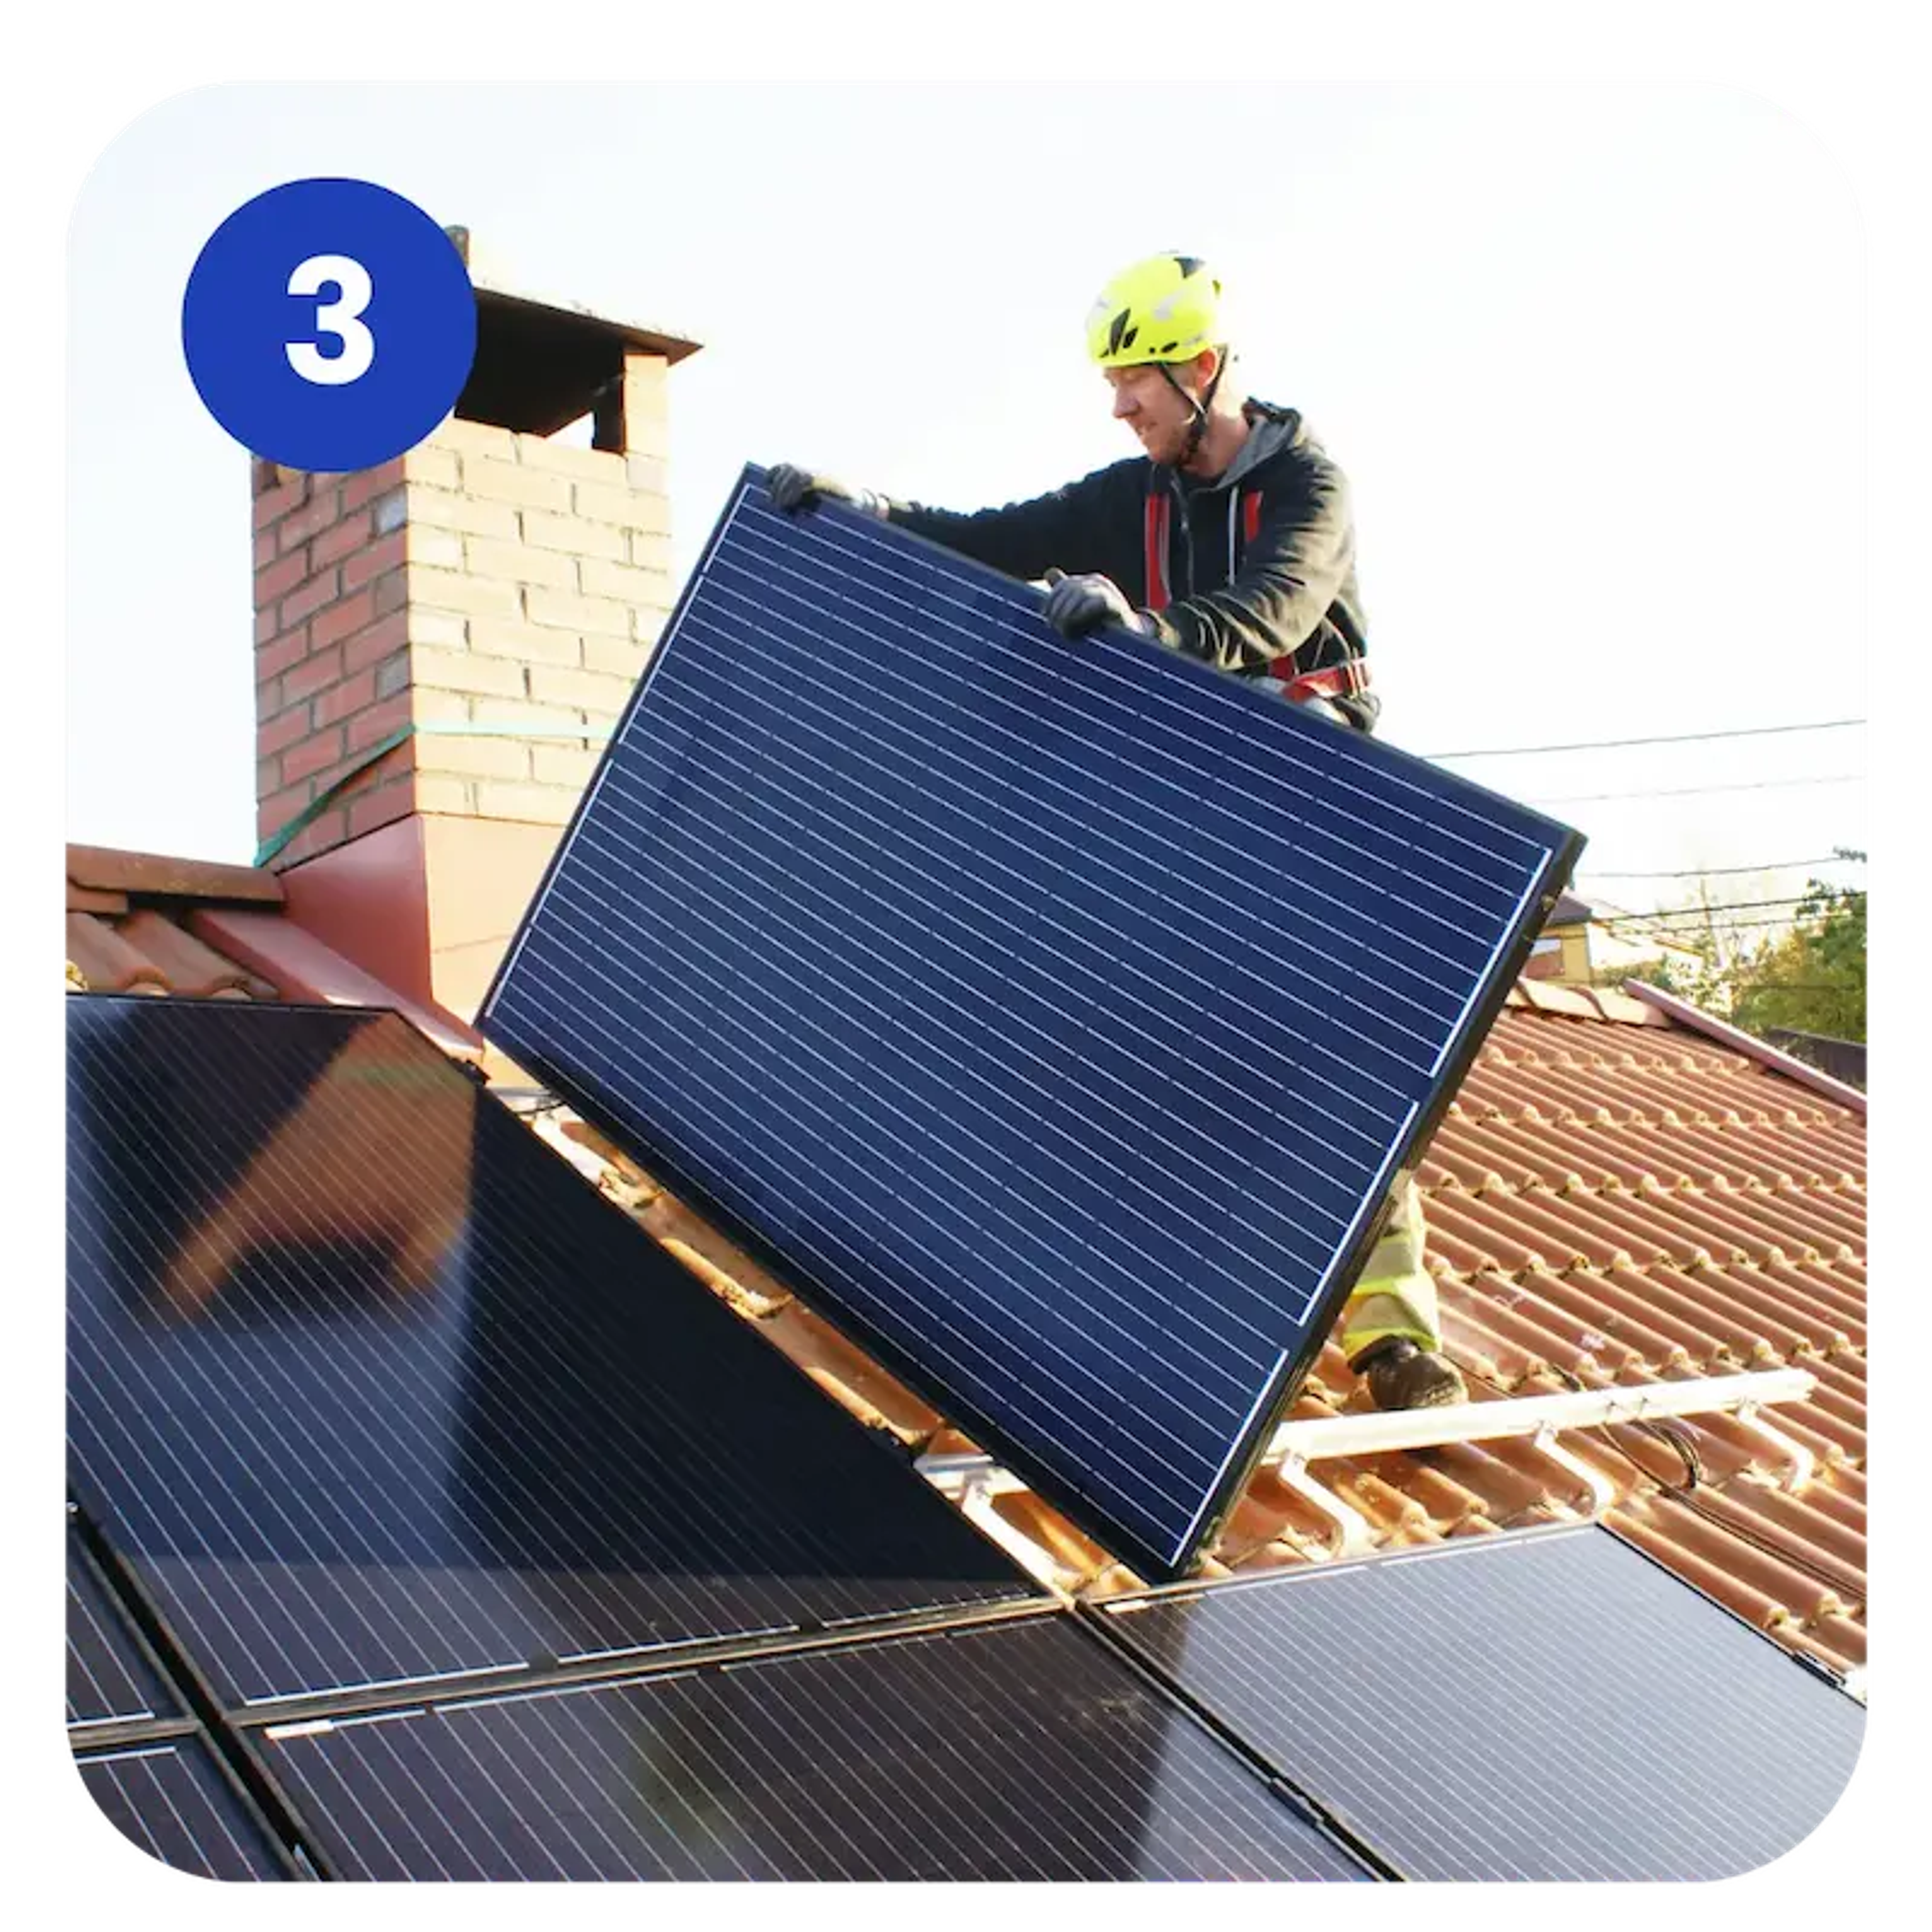 Ein Solarteur installiert ein Solarmodul auf einem Dach.